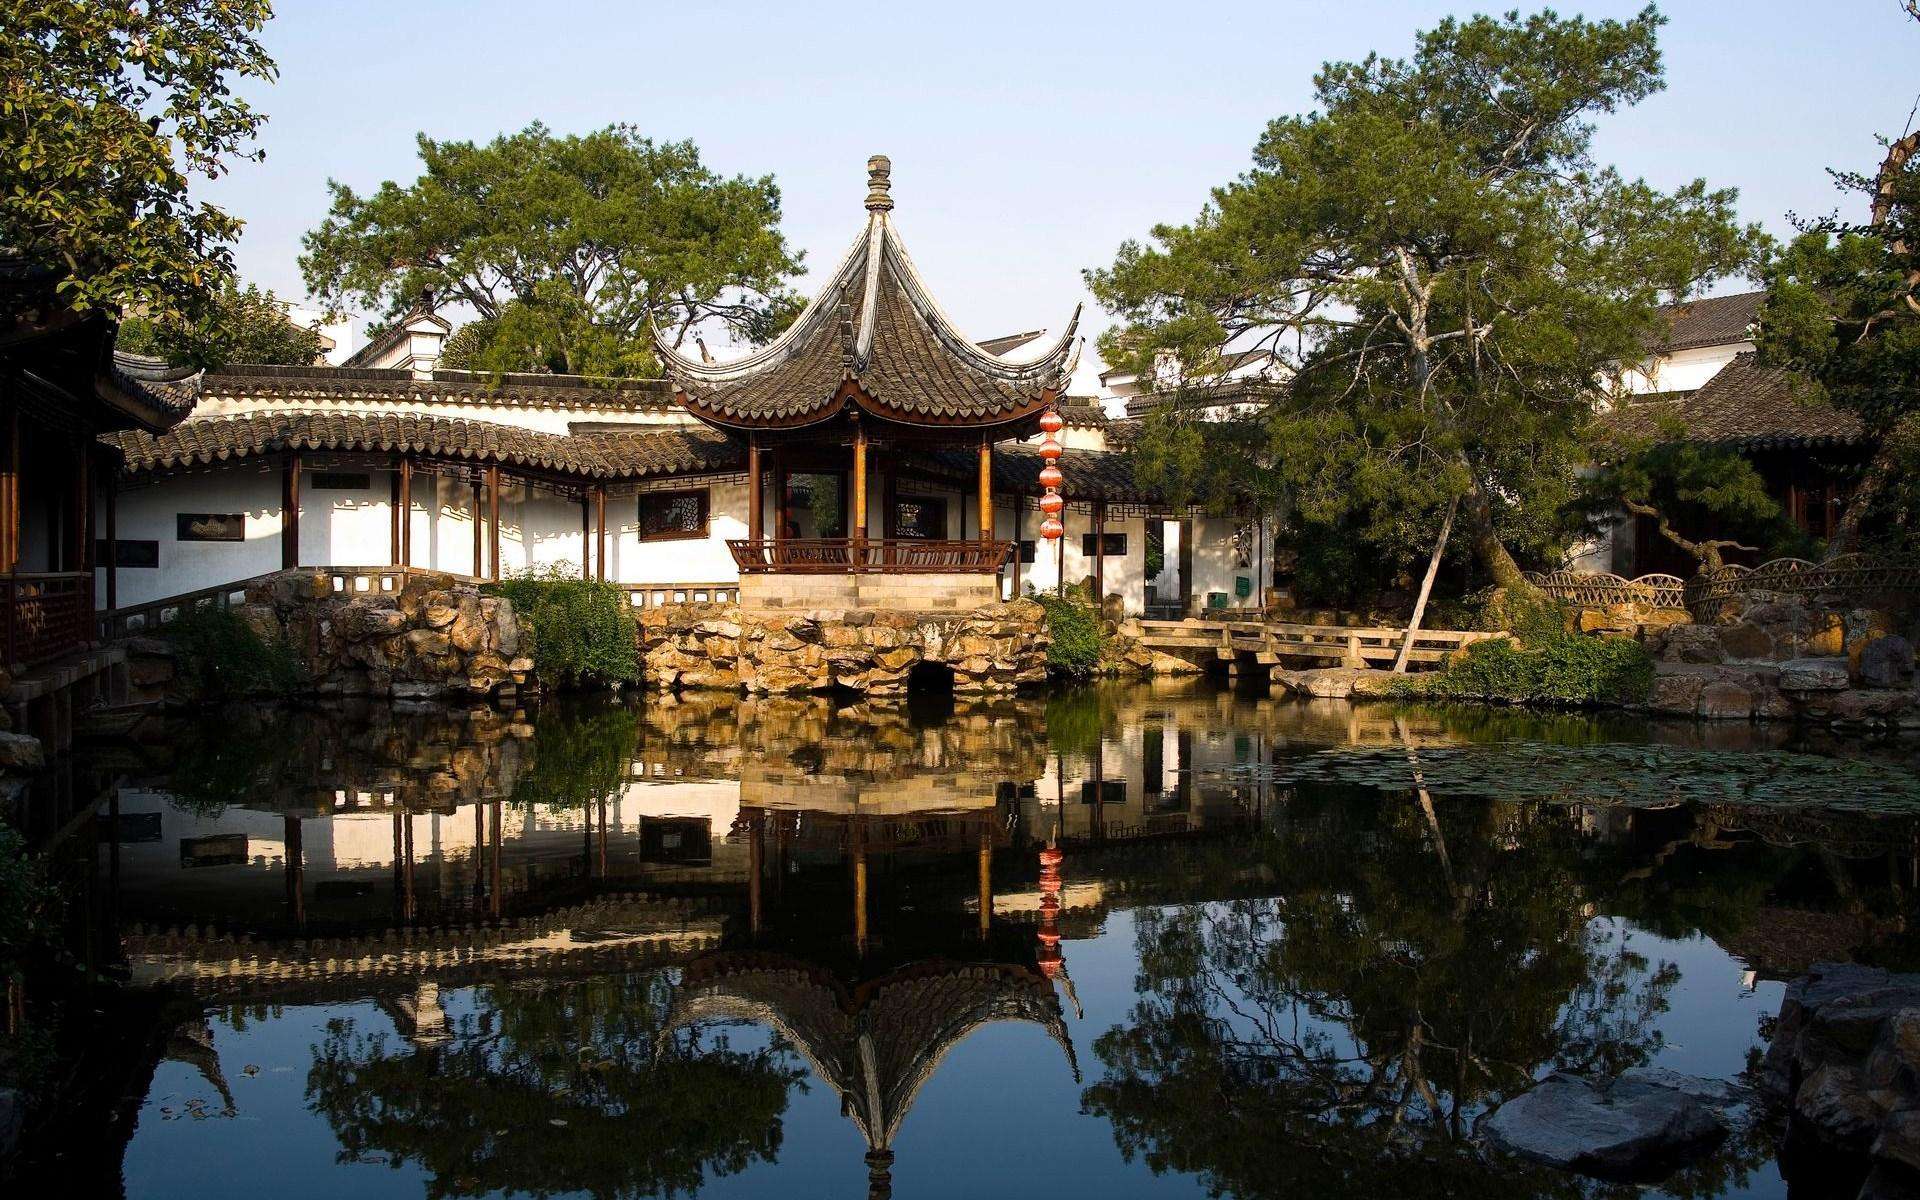 拙政园-中国十大私家园林-成都青望园林景观设计公司